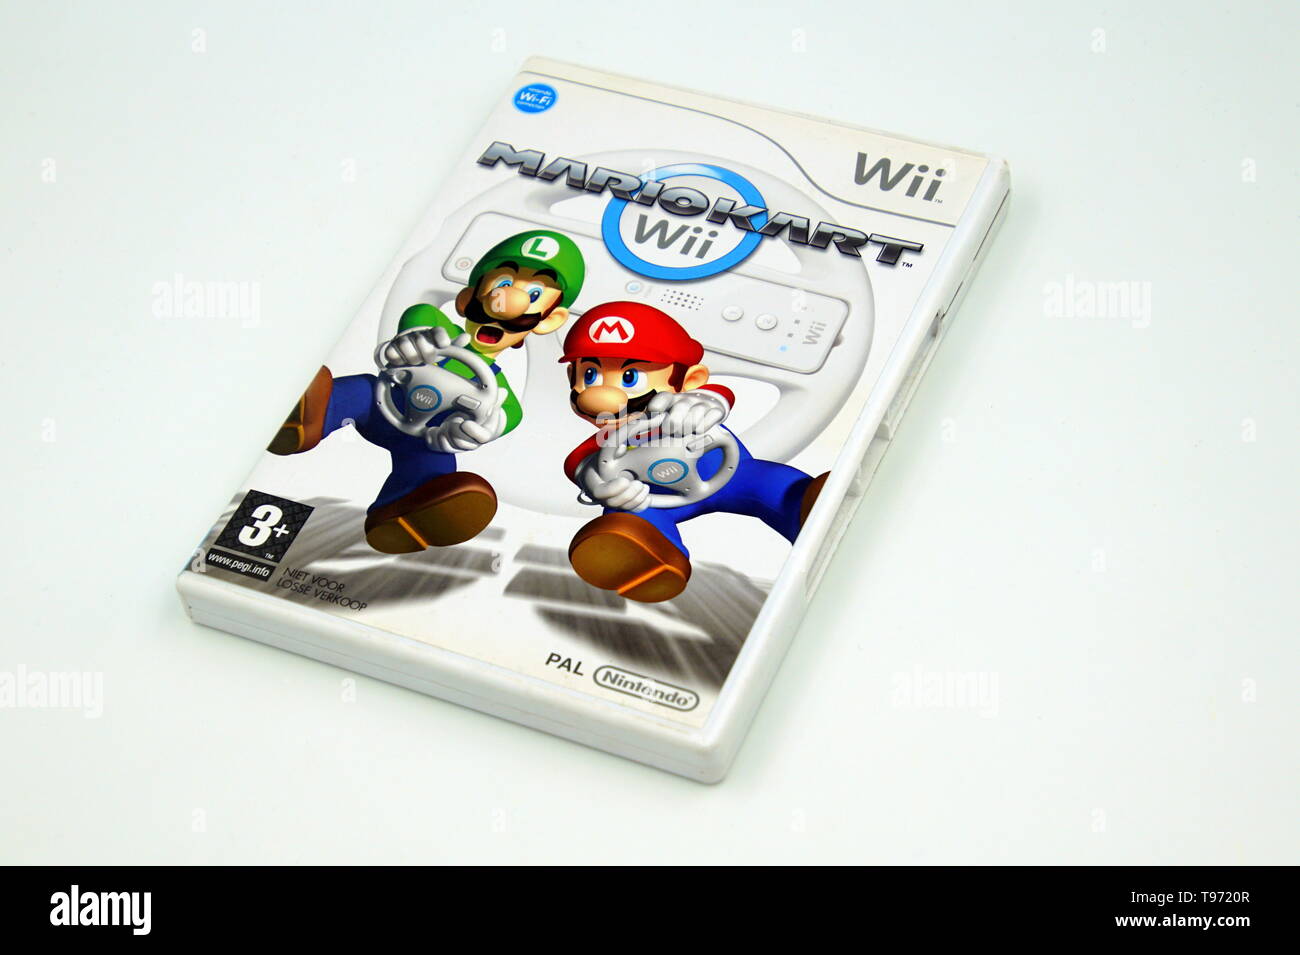 Nintendo Wii game Mario Kart against a white background. Stock Photo